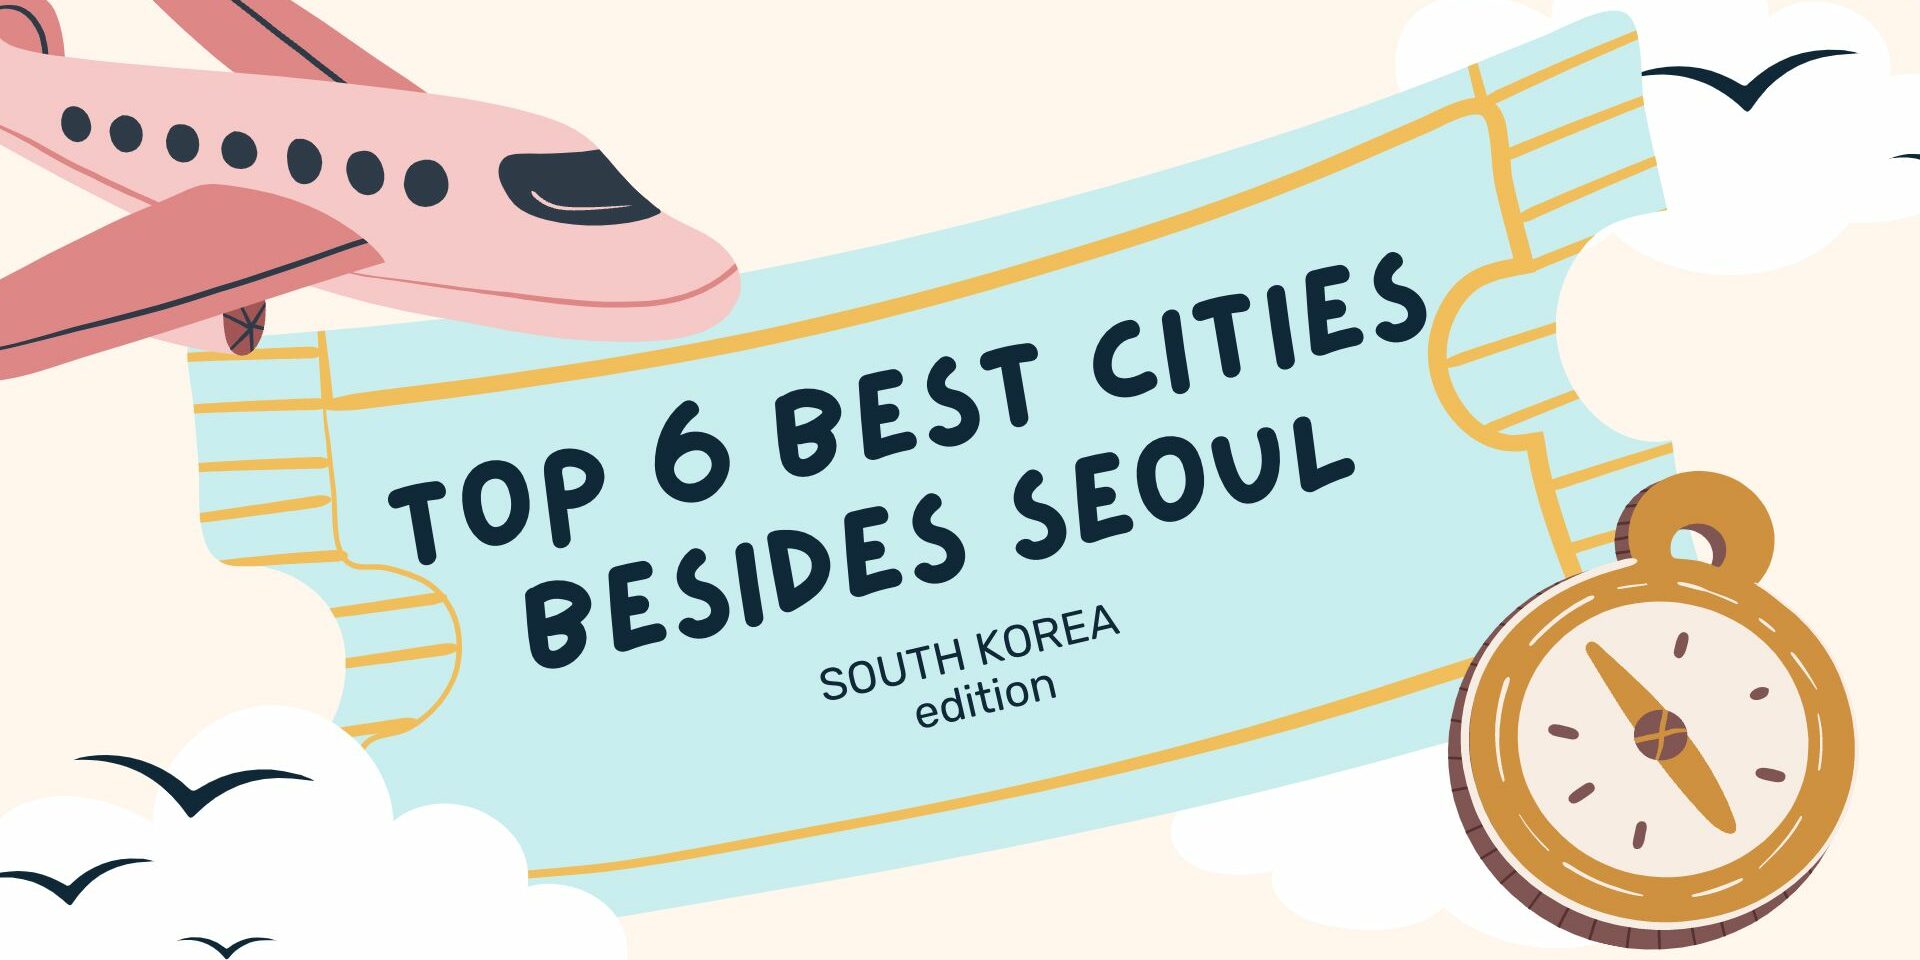 korean city to visit